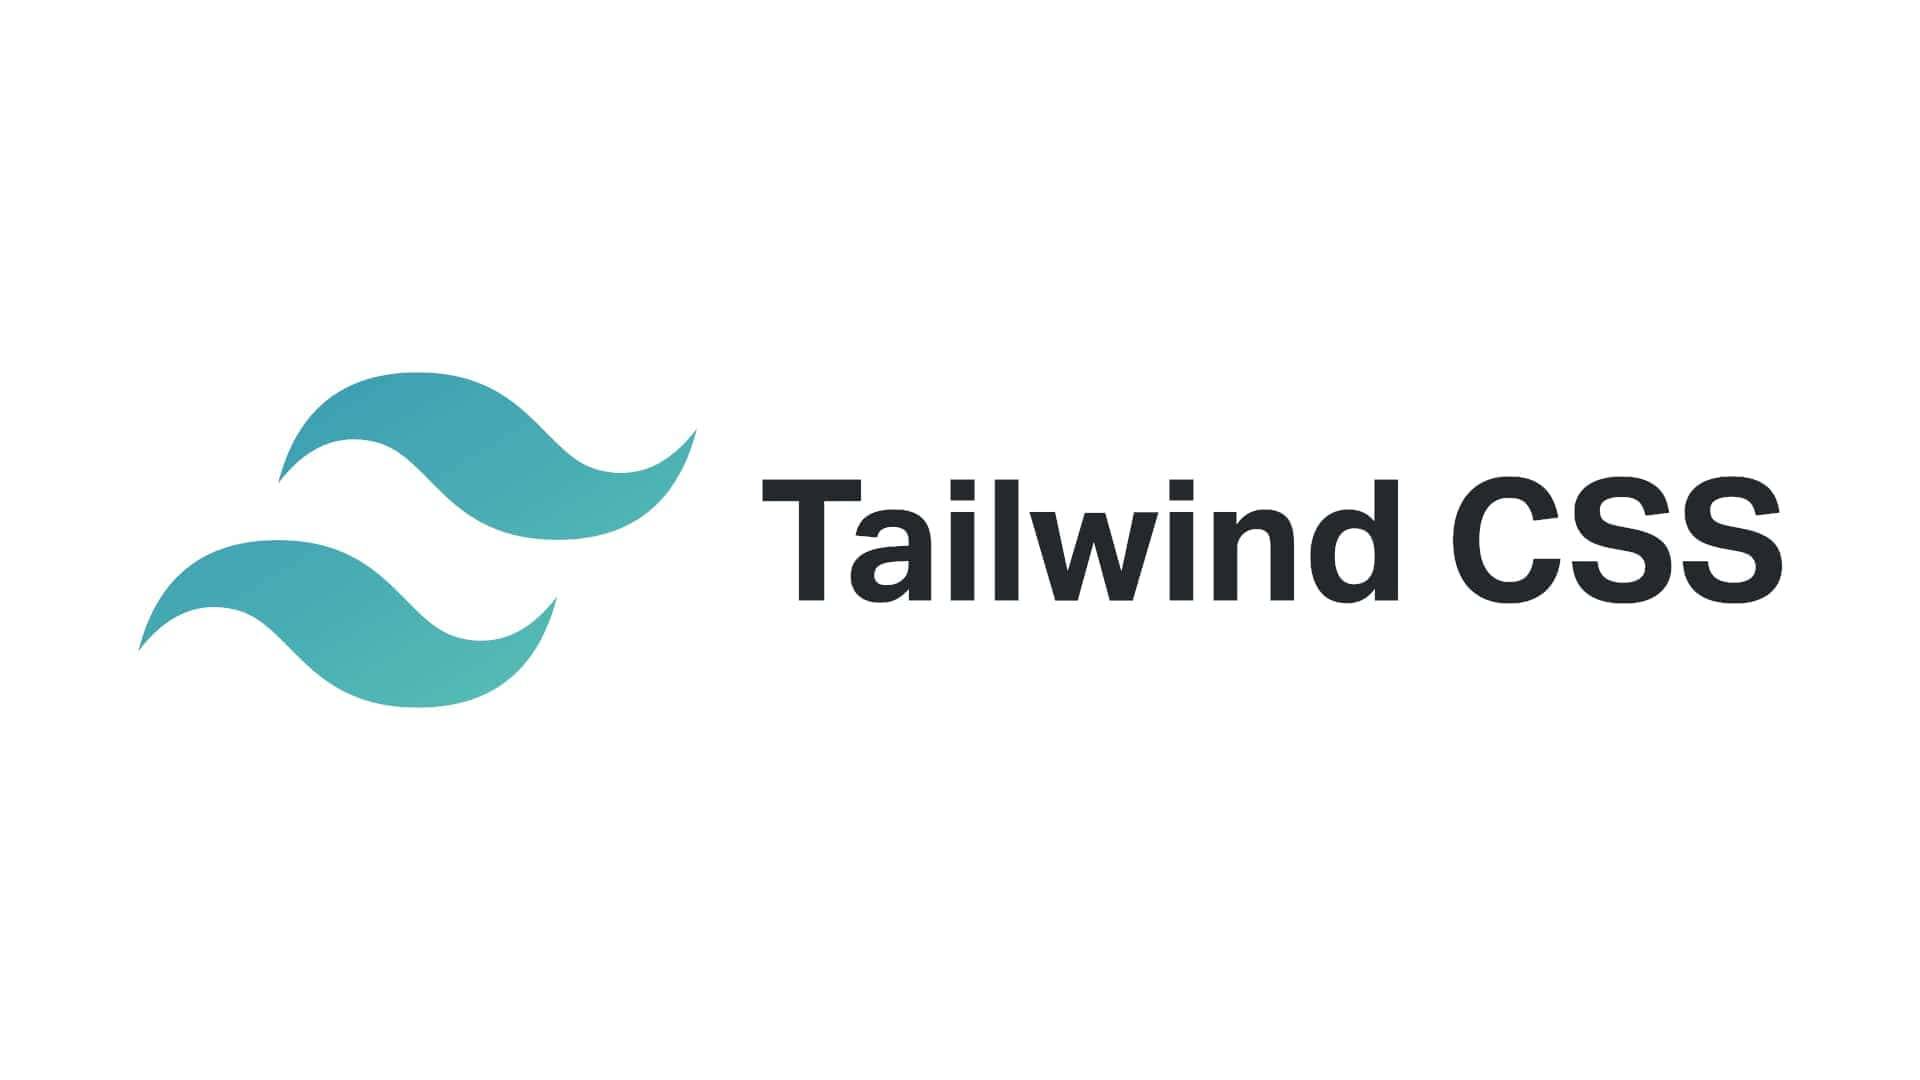 Tailwind CSS: Nếu bạn đang muốn tìm hiểu về sự đơn giản và tối ưu hóa trong thiết kế web, những ảnh liên quan đến Tailwind CSS sẽ cung cấp cho bạn những gợi ý mới mẻ để tạo ra những trang web thật sự tuyệt vời.